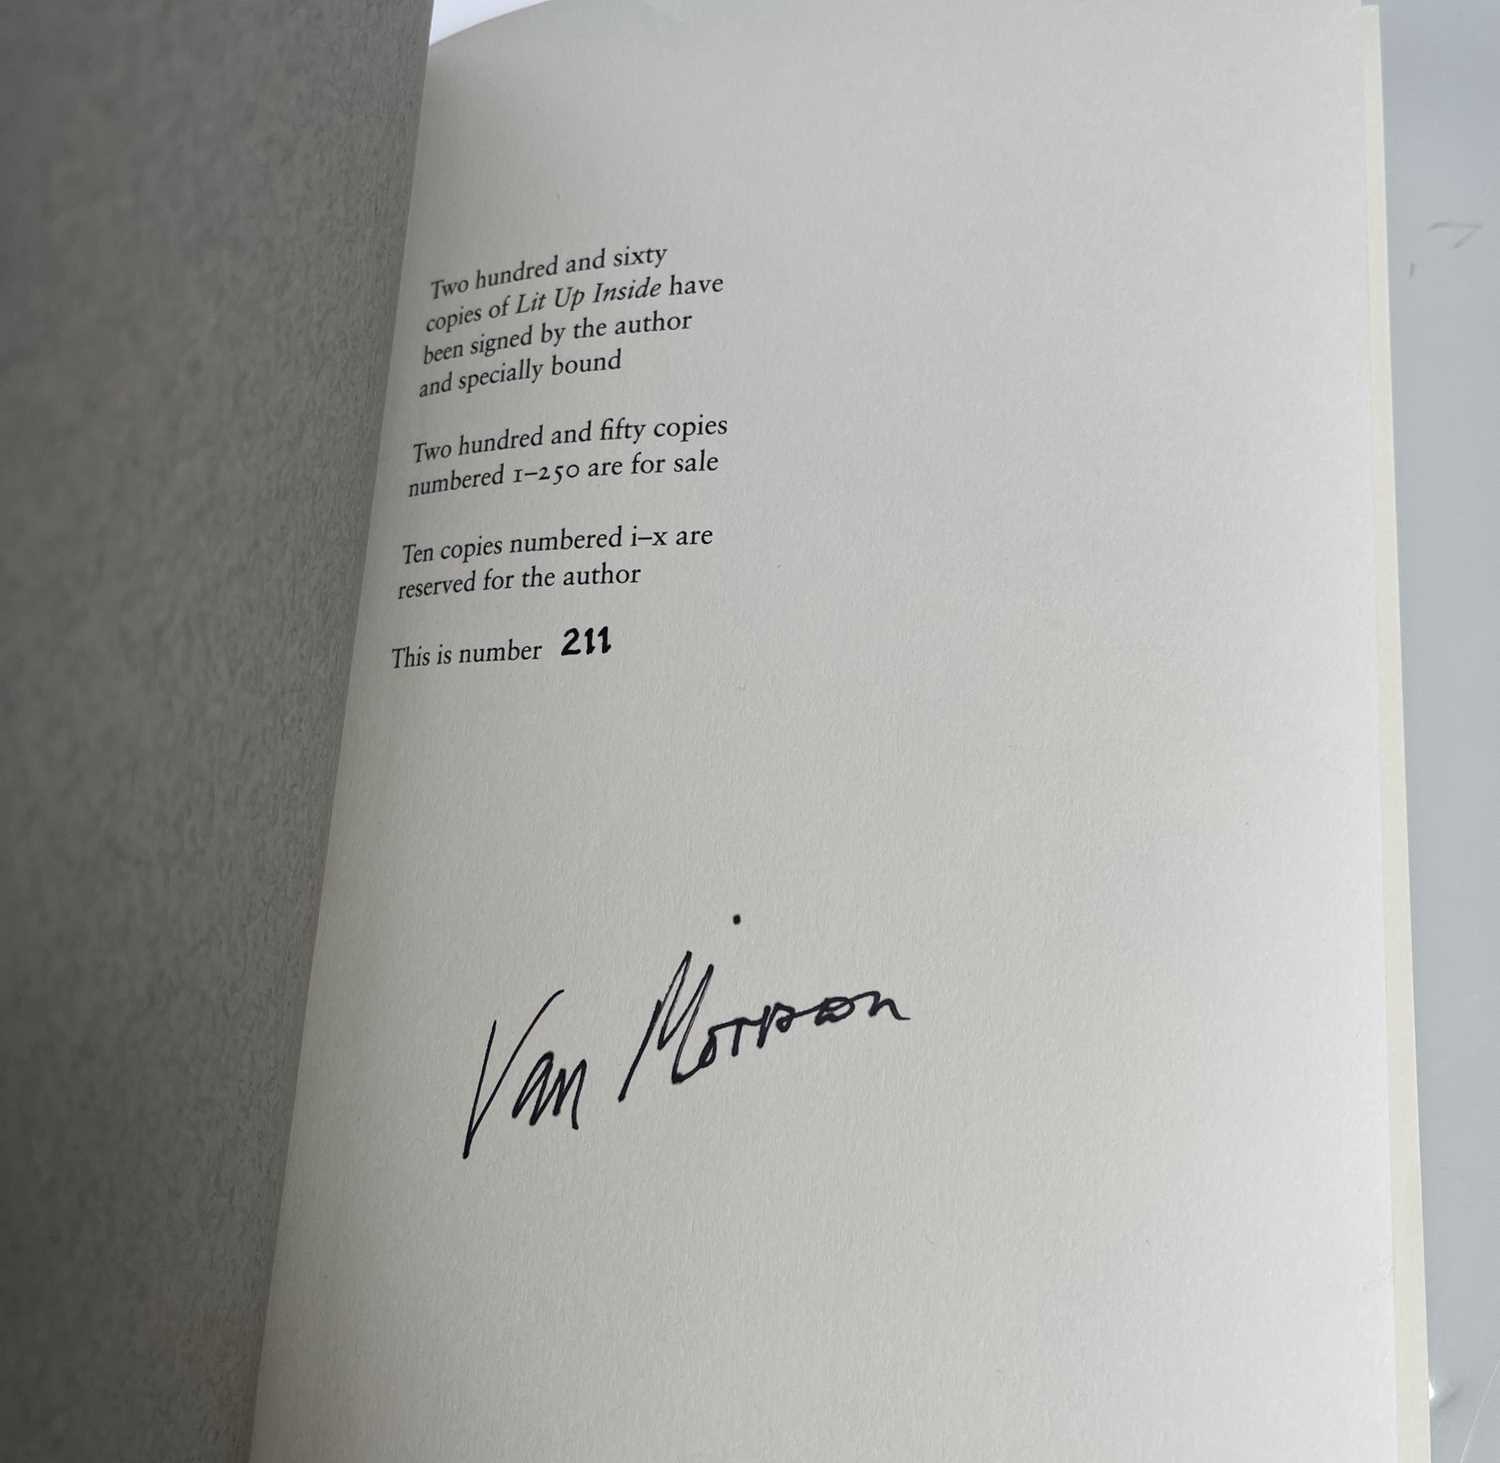 VAN MORRISON - LIT UP INSIDE, SIGNED LIMITED EDITION BOOK. - Image 3 of 3